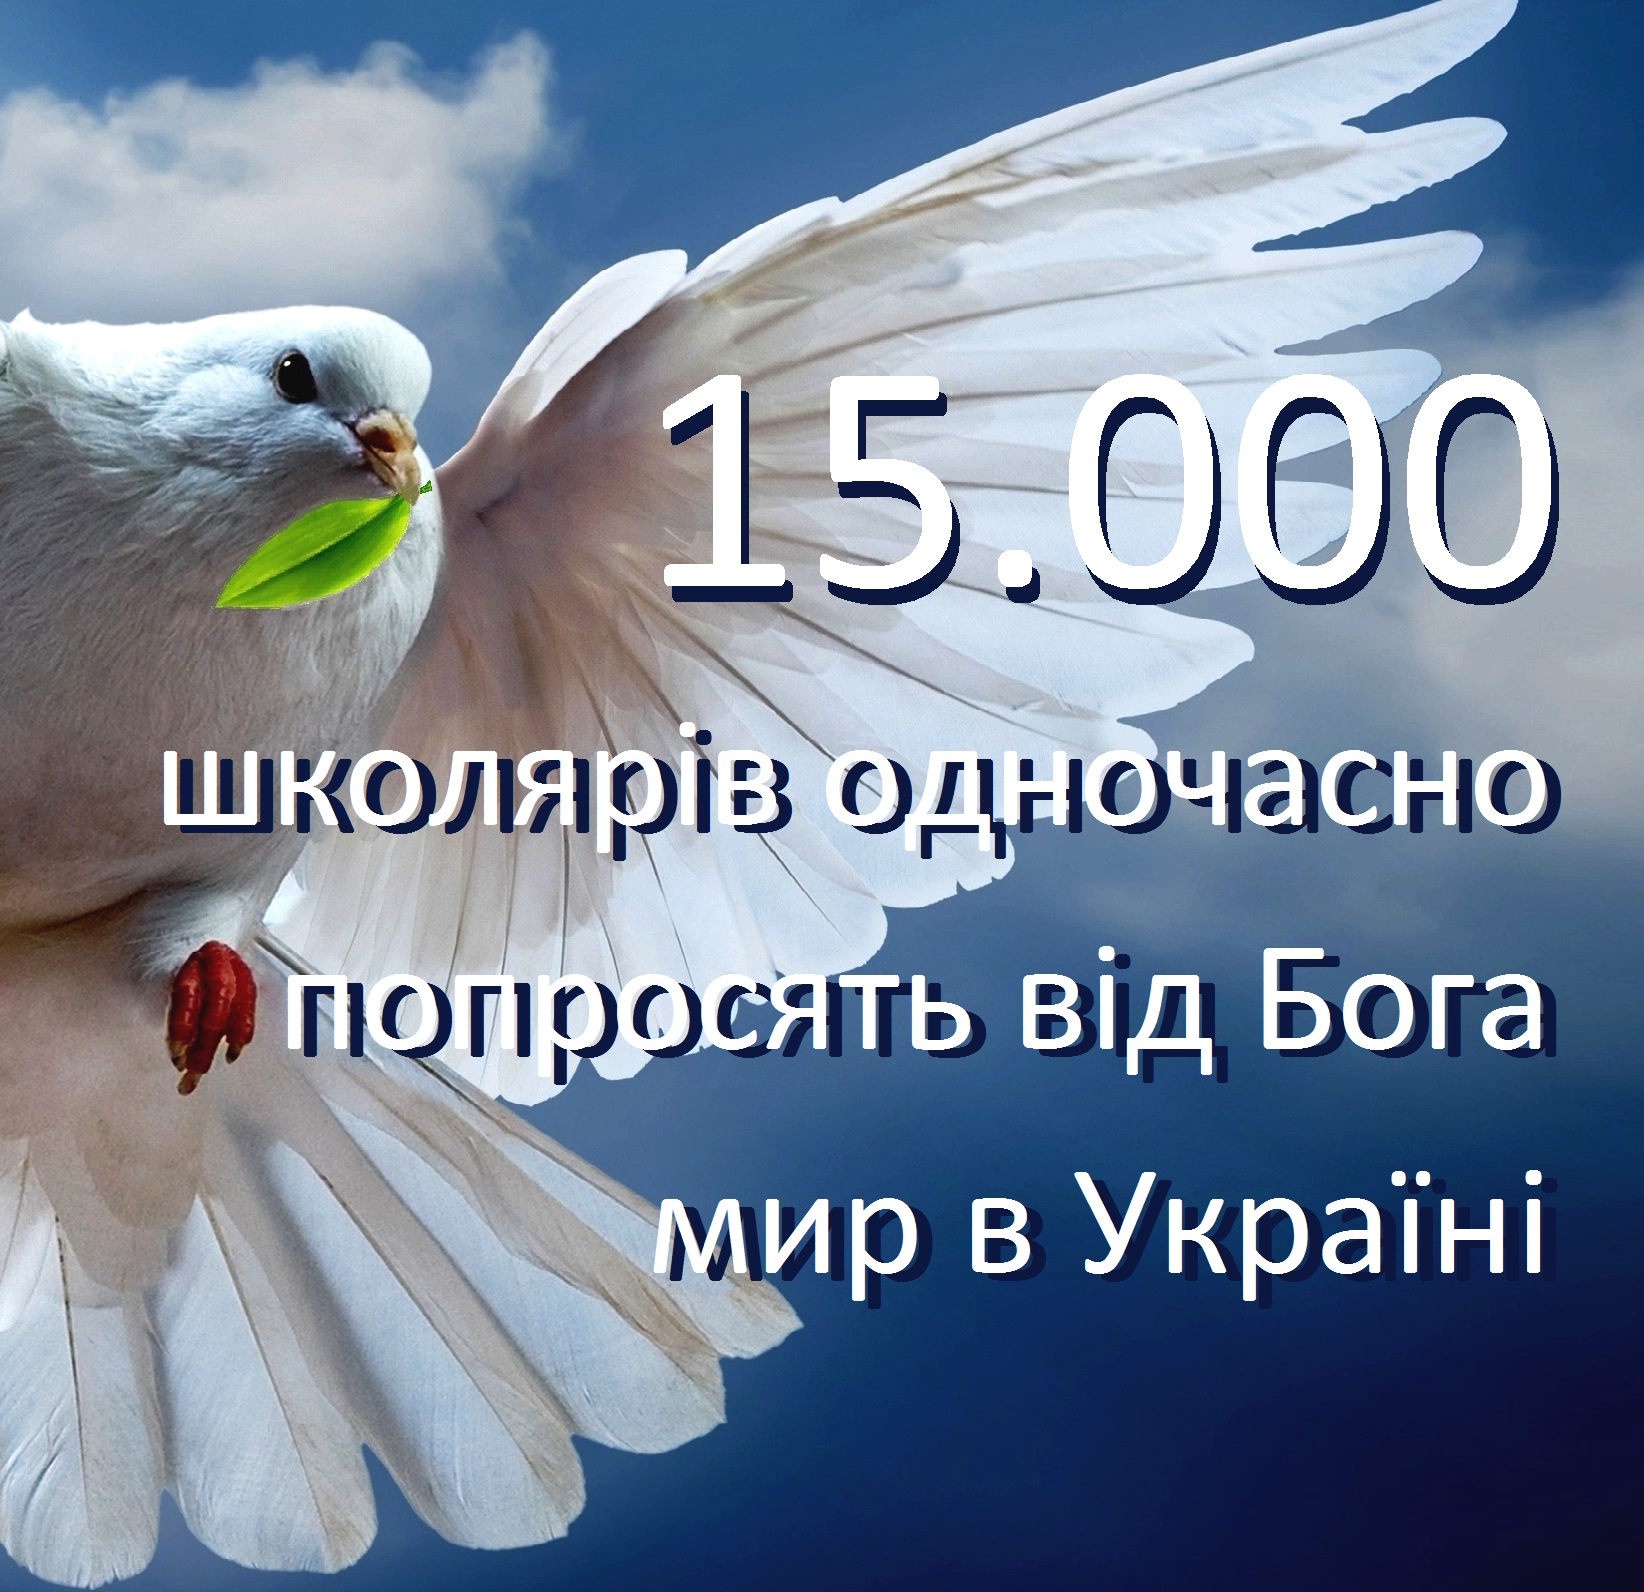 Как мы уже сообщали, 5 апреля в 9.40 все школьники Виноградовского района одновременно попросят у Бога мир в Украине.